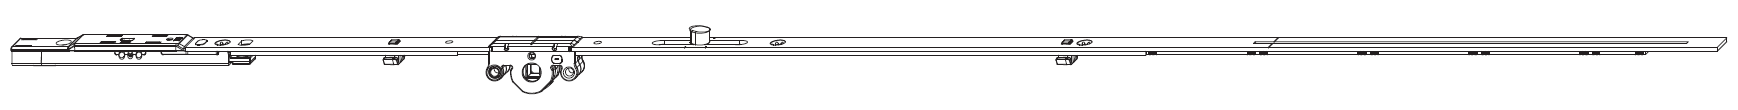 MAICO -  Cremonese MULTI-MATIC anta a bandiera altezza maniglia fissa con puntale chiusura ad espansione per seconda anta - gr / dim. 1340 - entrata 15 - alt. man. 400 - lbb/hbb 1091 - 1340